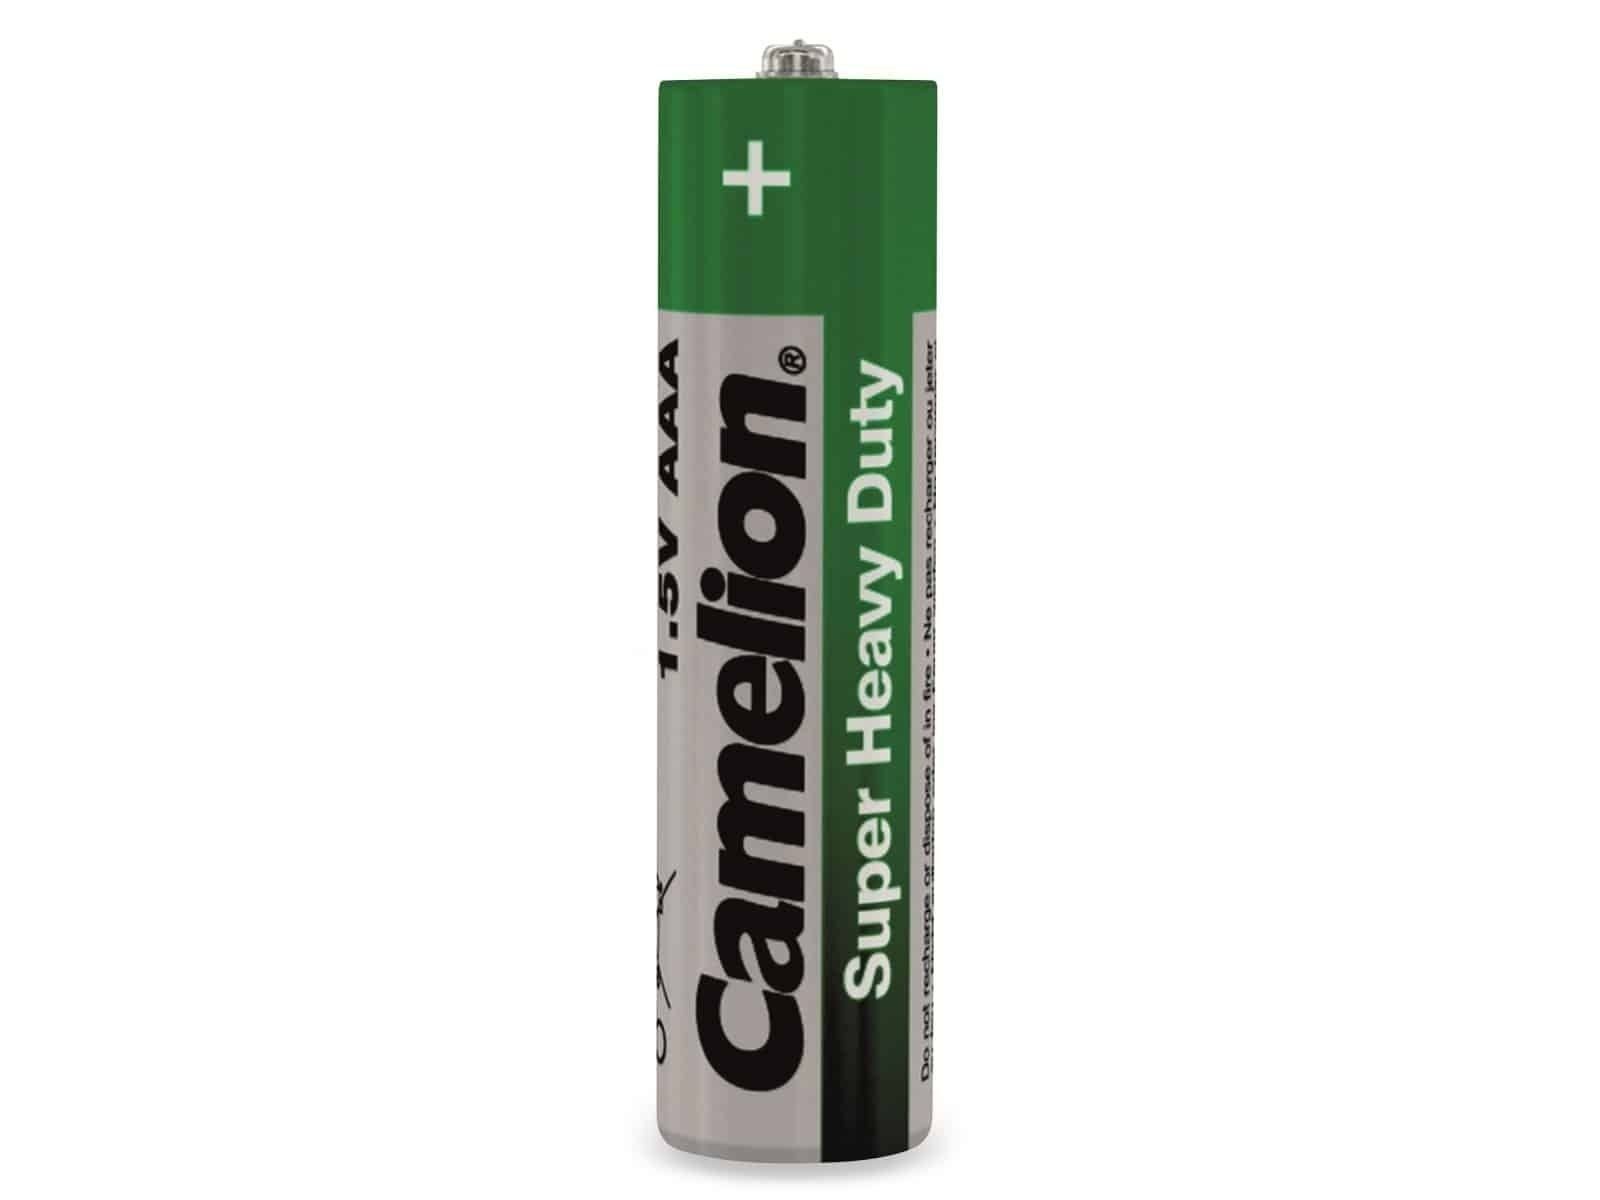 Stück Heavy CAMELION Camelion Micro-Batterie, Super 4 Duty Batterie